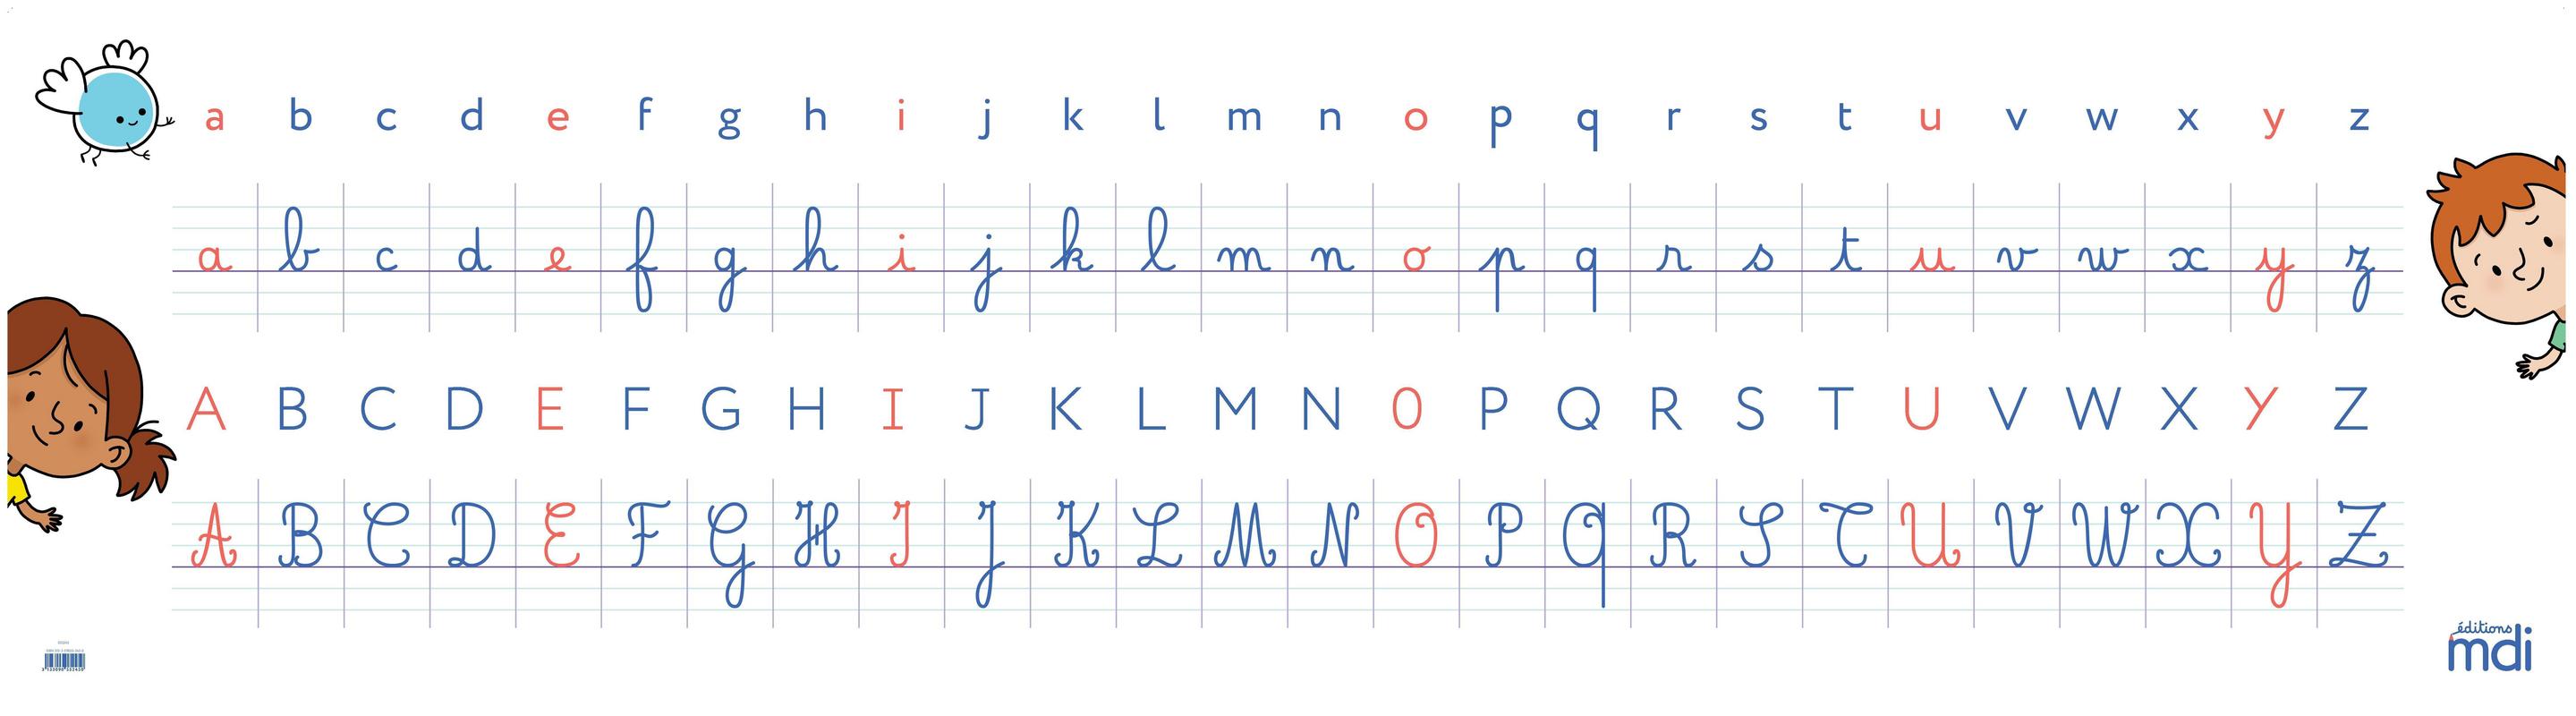 Frise alphabet 4 écritures (cursives et scriptes) - Professeur Chicraôte -  Ma classe coopérative